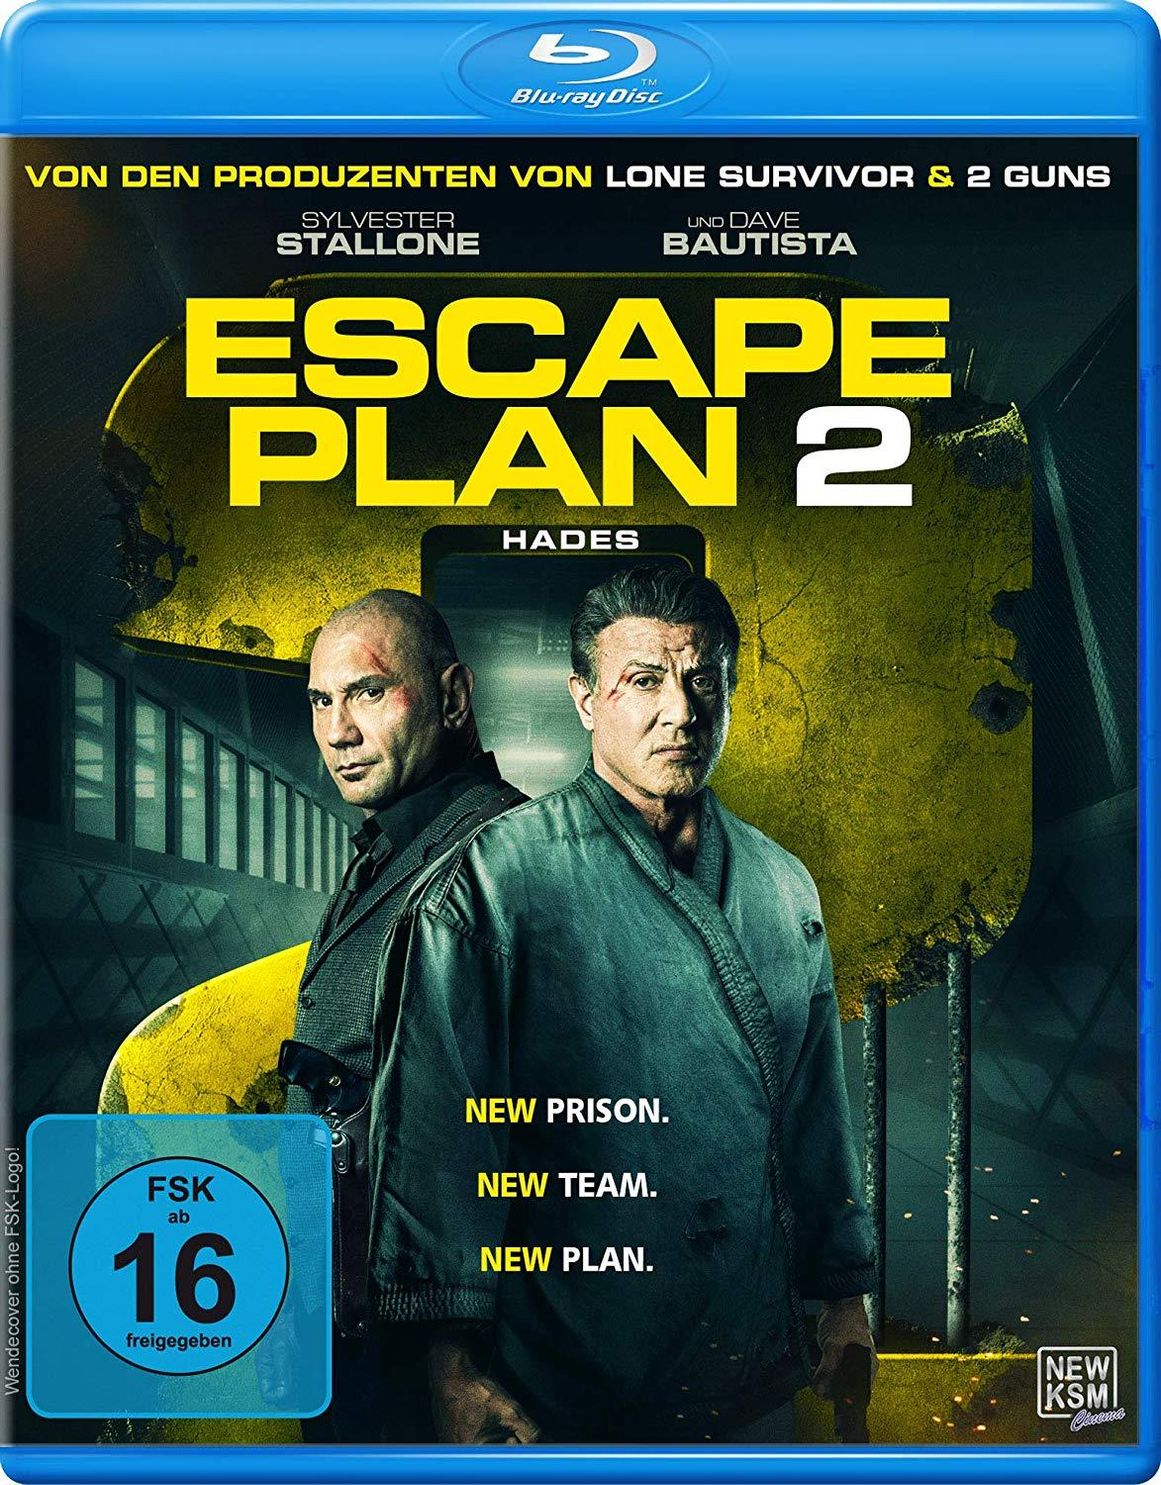 Escape Plan 2 - Hades Blu-ray jetzt im Weltbild.at Shop bestellen